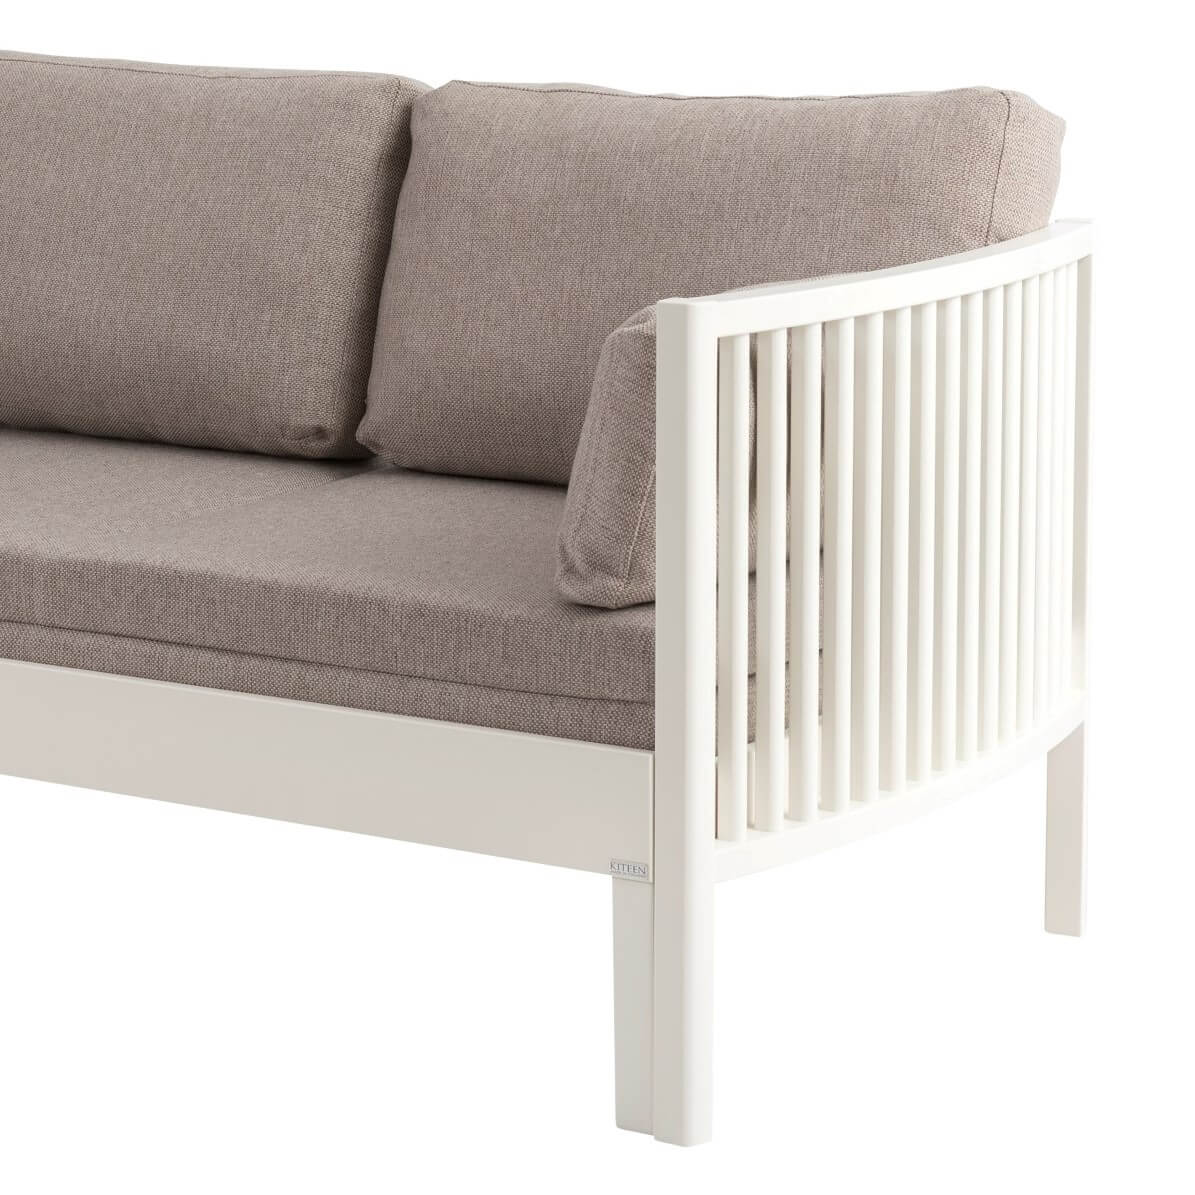 Sofa design AARRE białe drewno. Fragment z widokiem boku z litego drewna brzozy skandynawskiej i wysokich nóżek rozkładanej nowoczesnej sofy z beżowym materacem